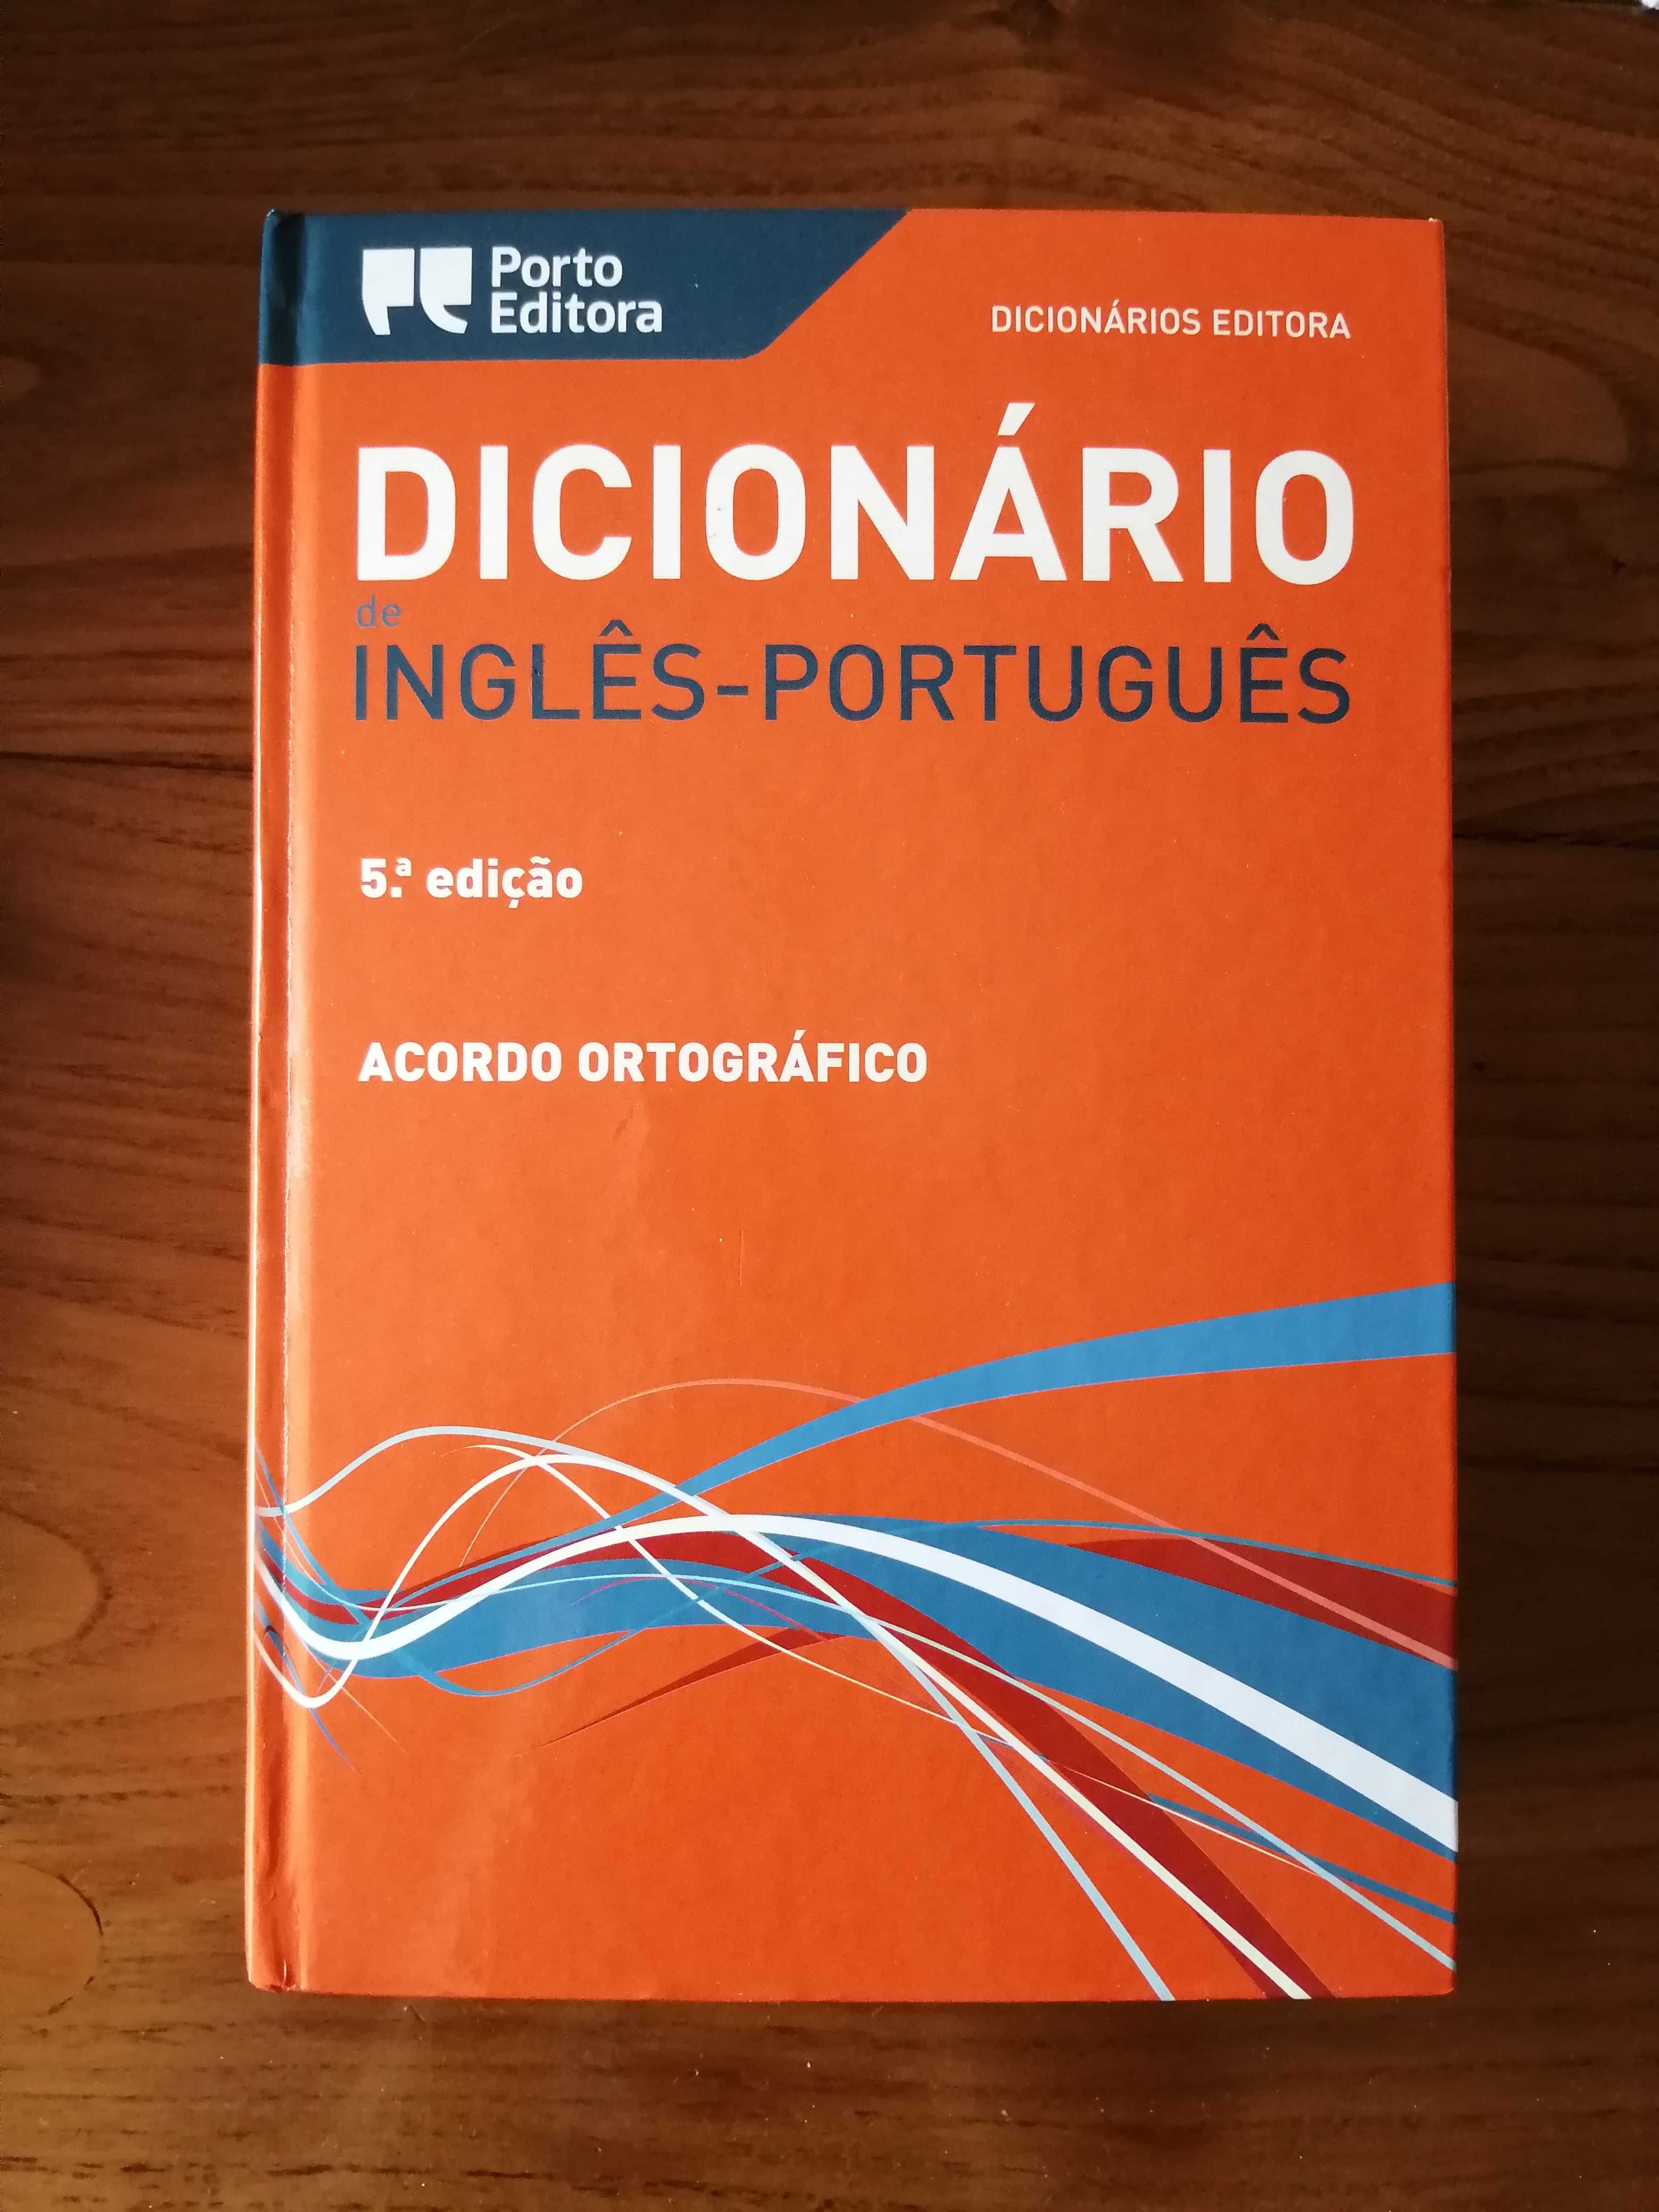 Dicionário Editora Inglês-Português 5ªEdição, capa dura